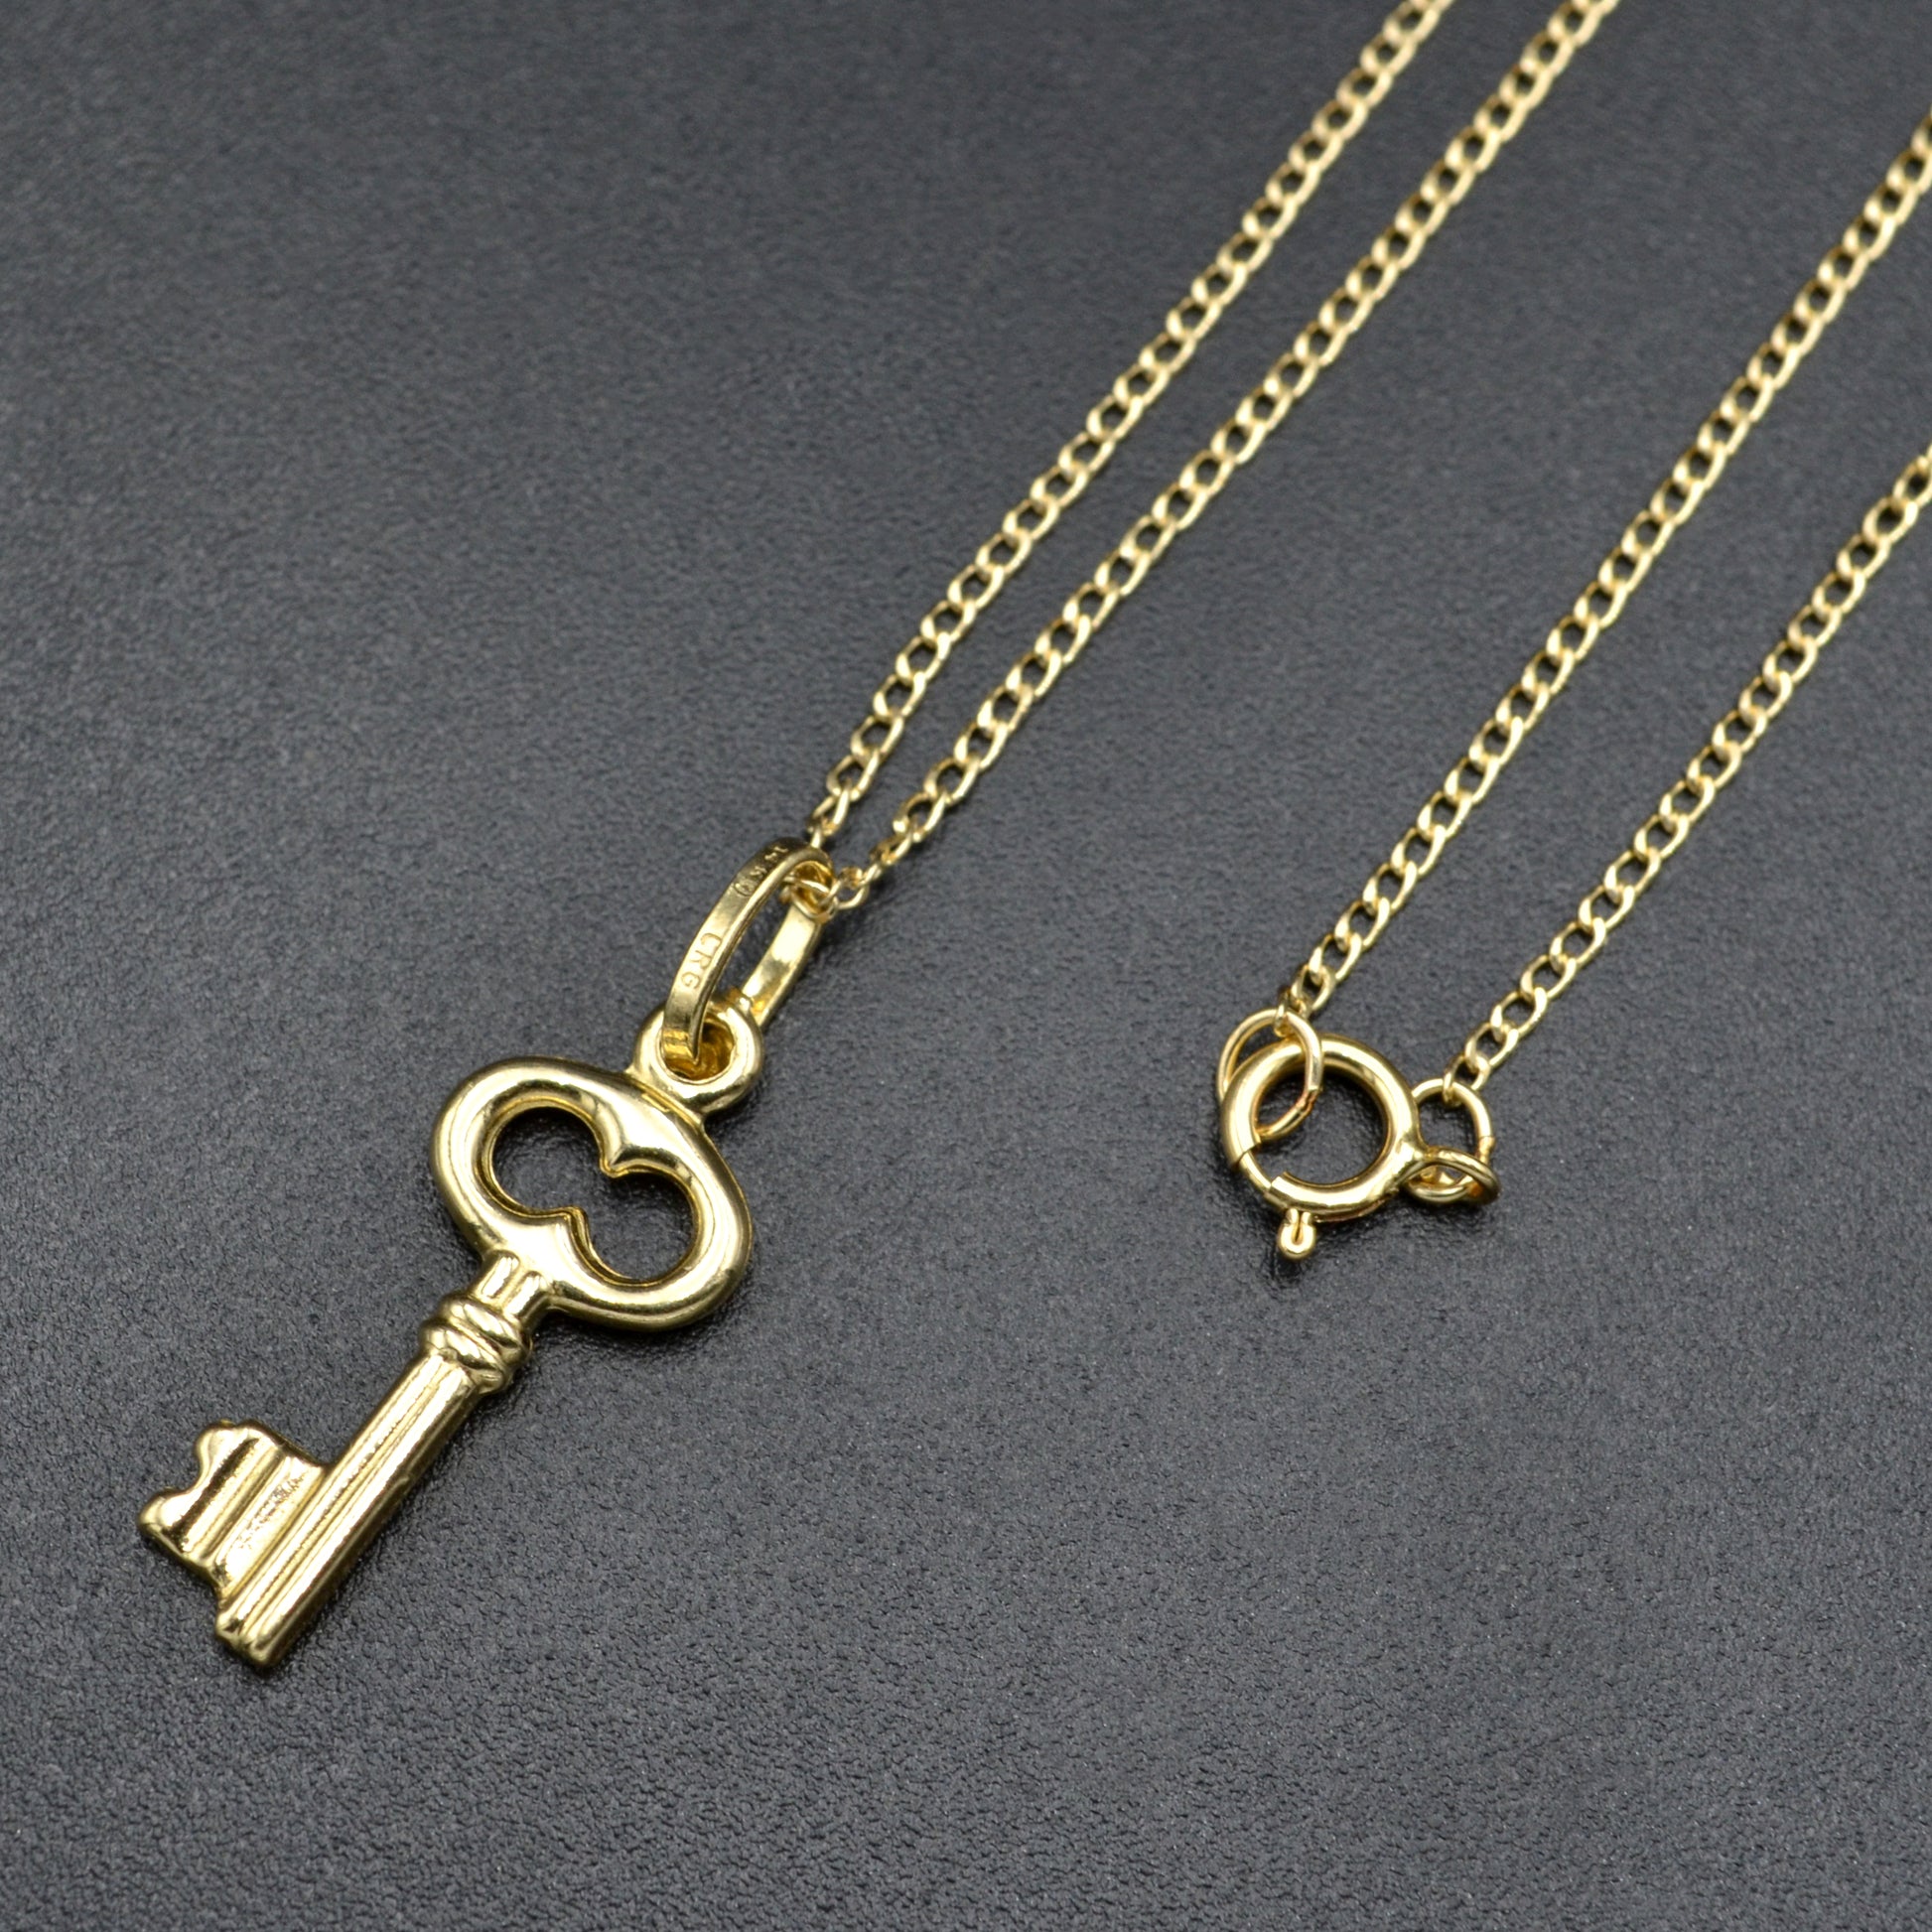 Vintage 14k Gold Skeleton Key Charm Pendant Necklace